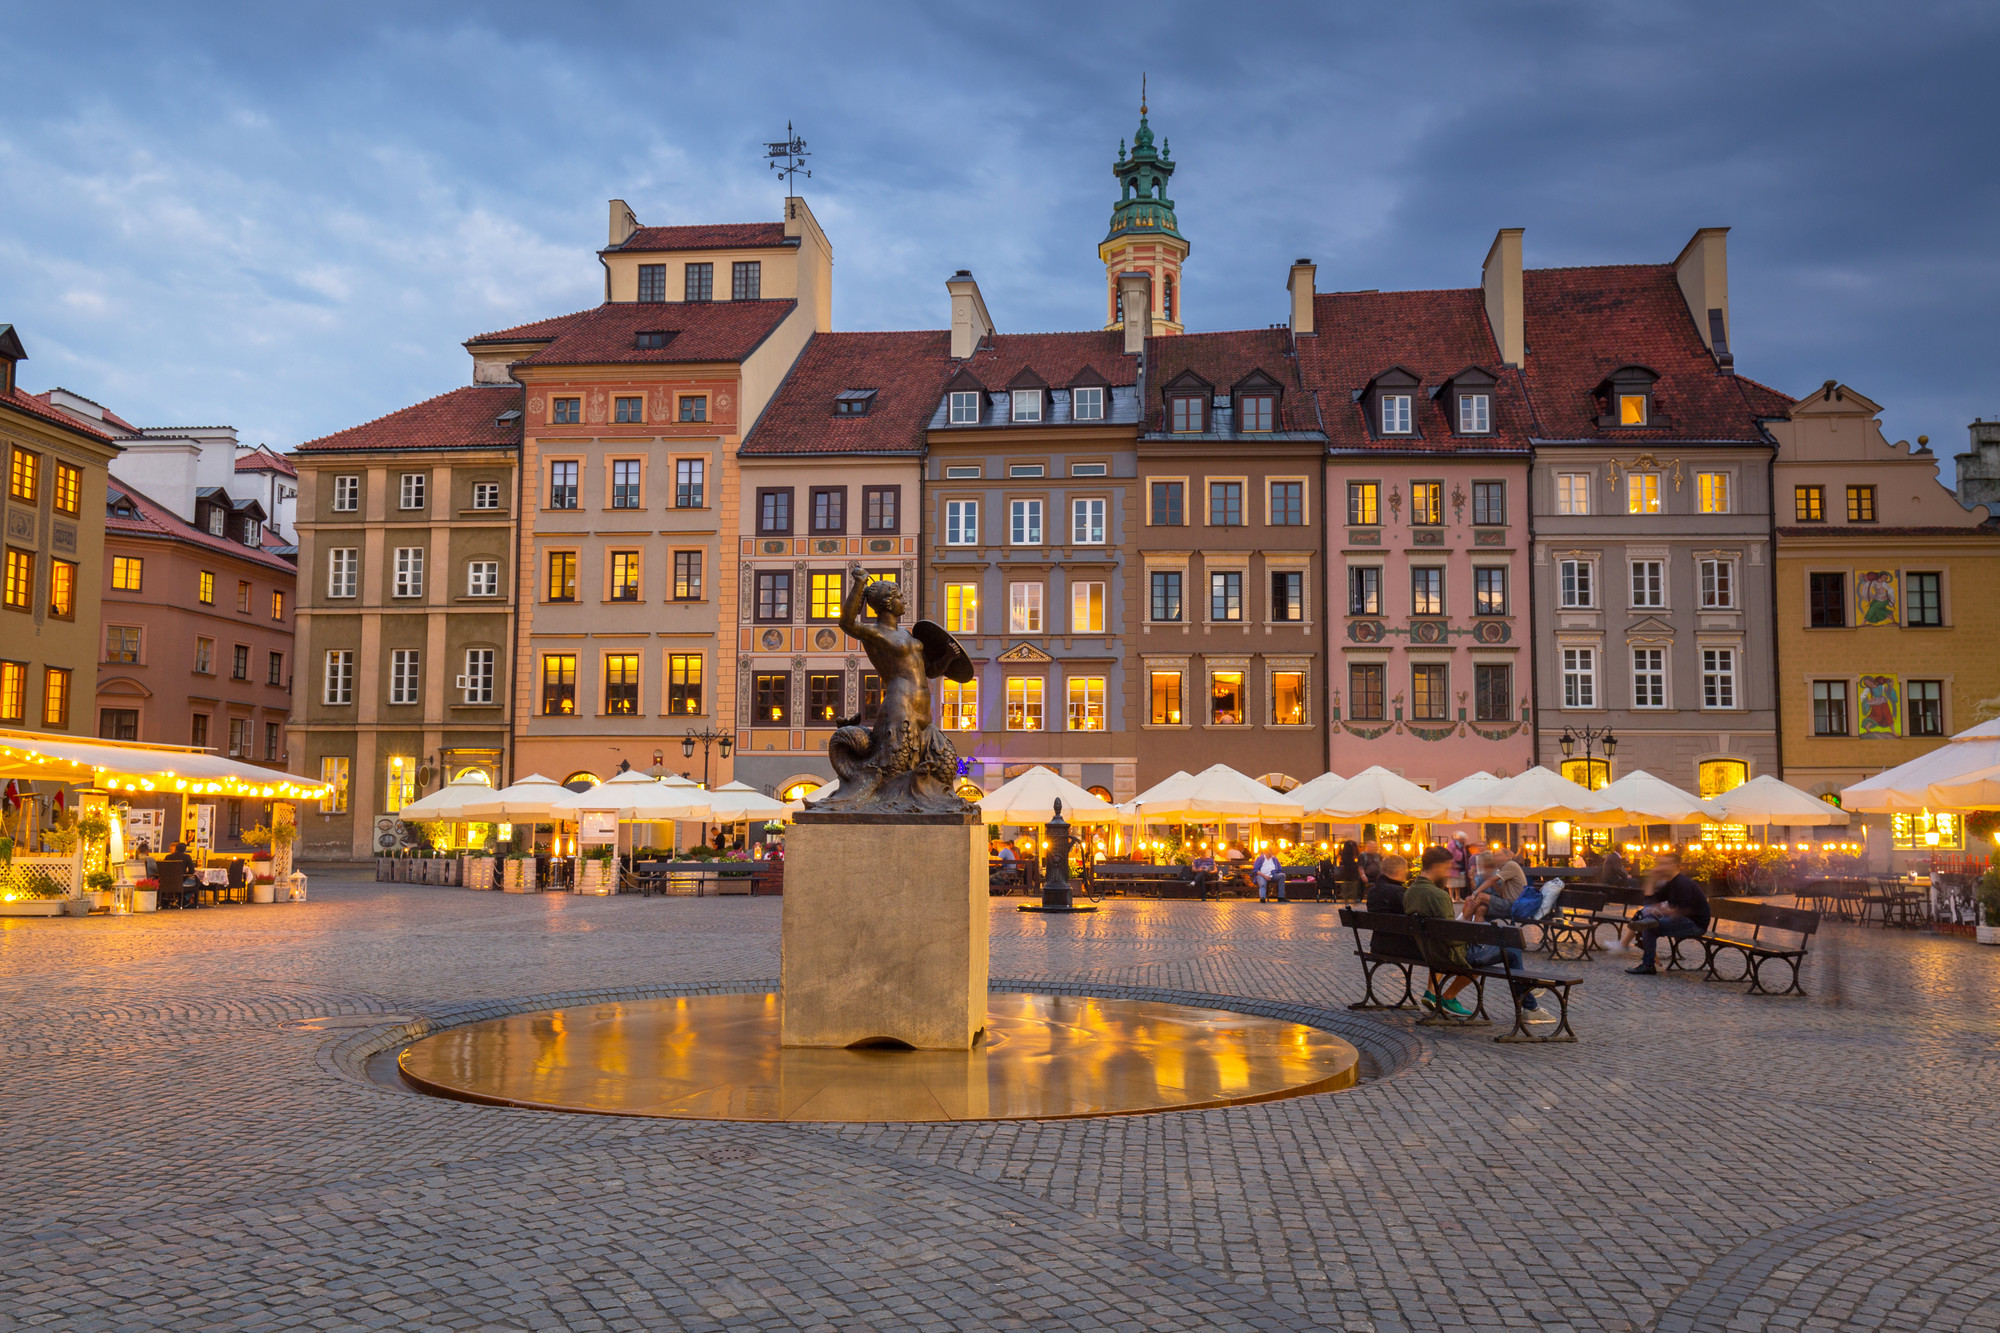 میدان شهر قدیمی در جمهوری چک